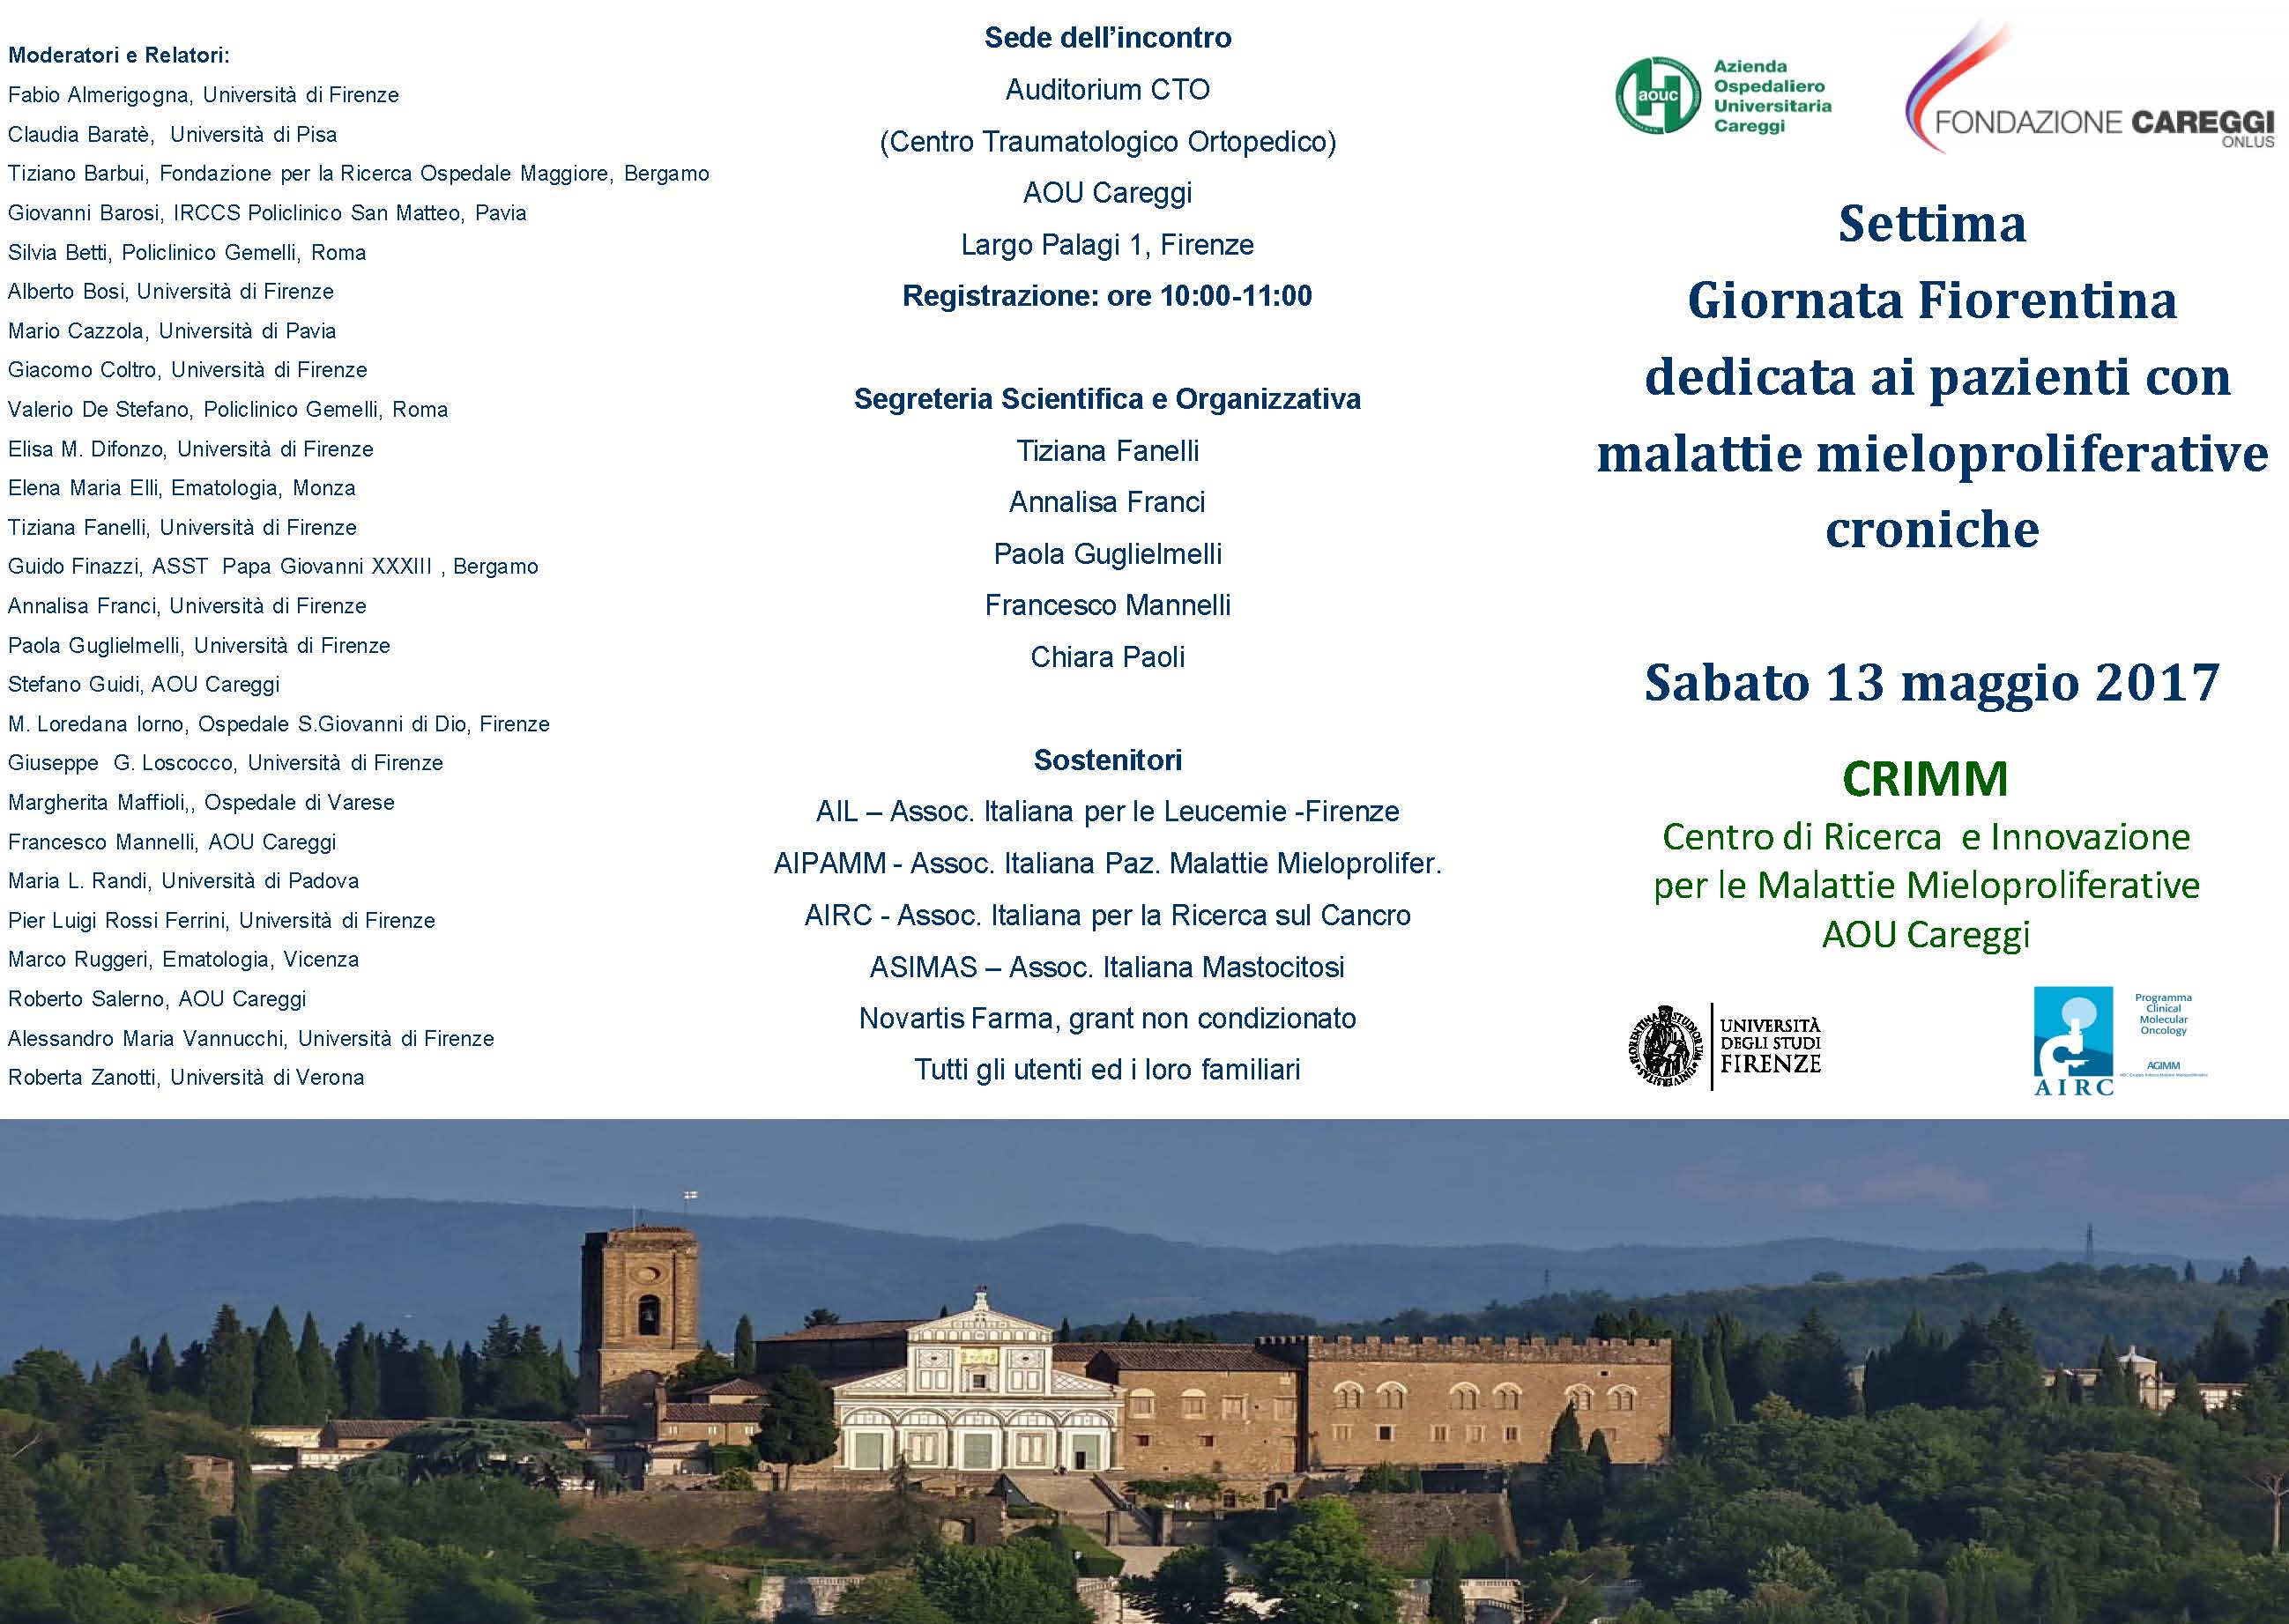 Settima Giornata Fiorentina dedicata ai pazienti con malattie mieloproliferative croniche